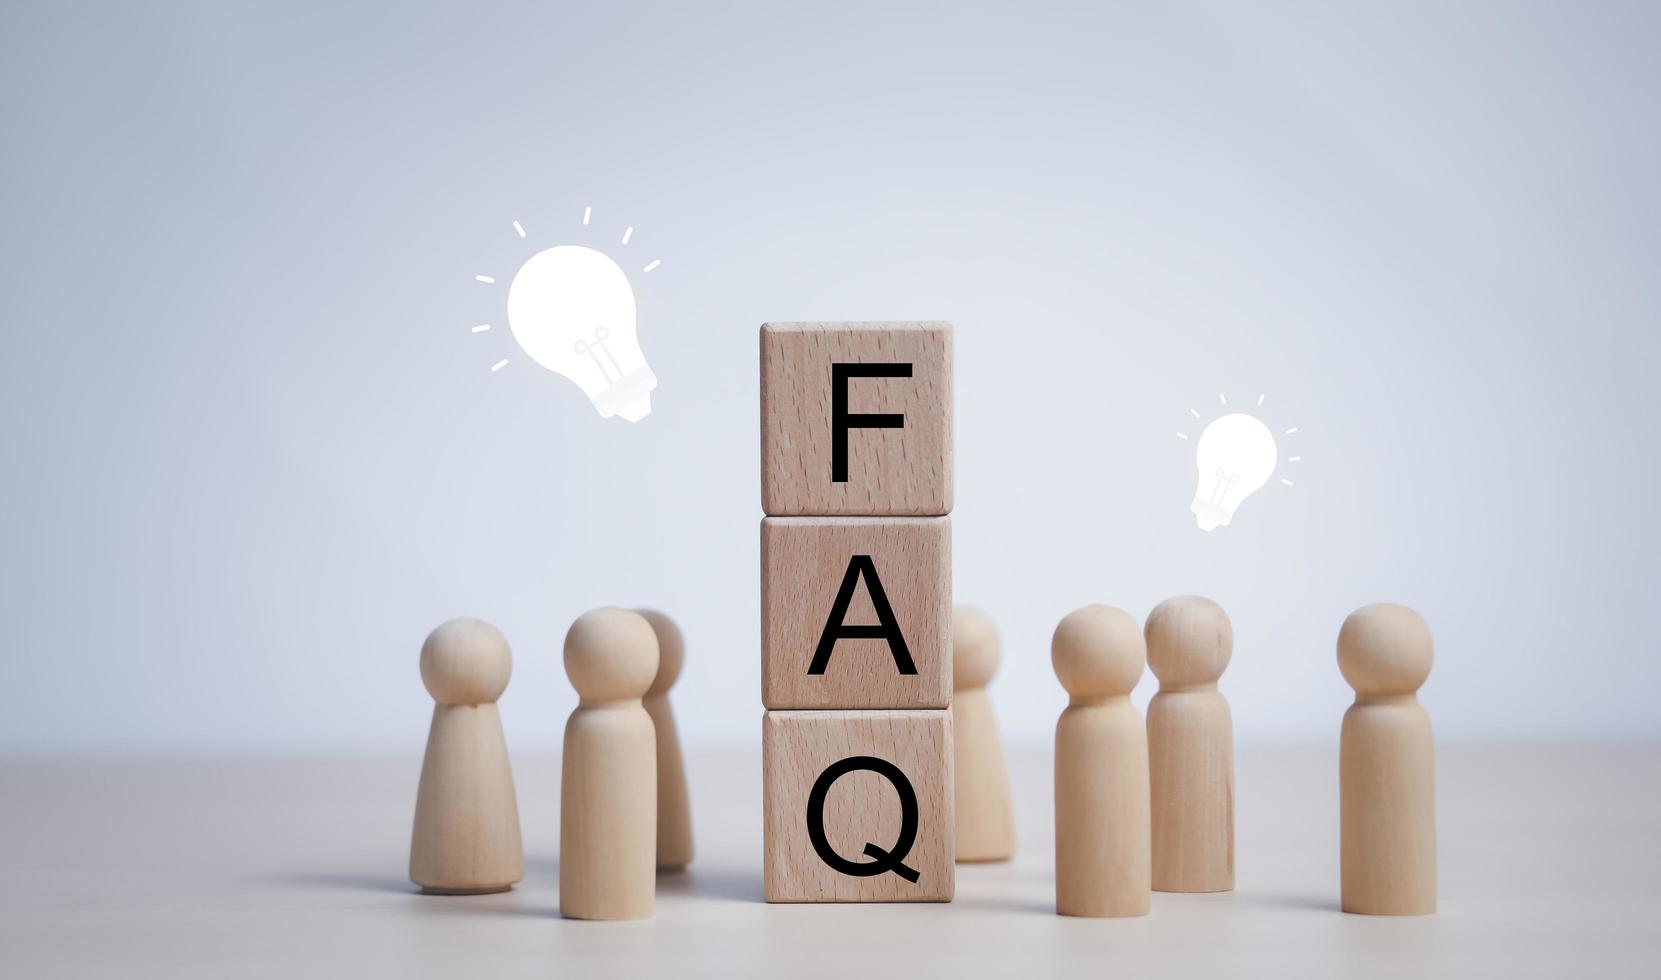 Holzblöcke kreisen mit häufig gestellten Fragen des Wortes, Holzfiguren als Geschäftsteam im Kreis um Wort-FAQs, auf weißem Hintergrund, foto